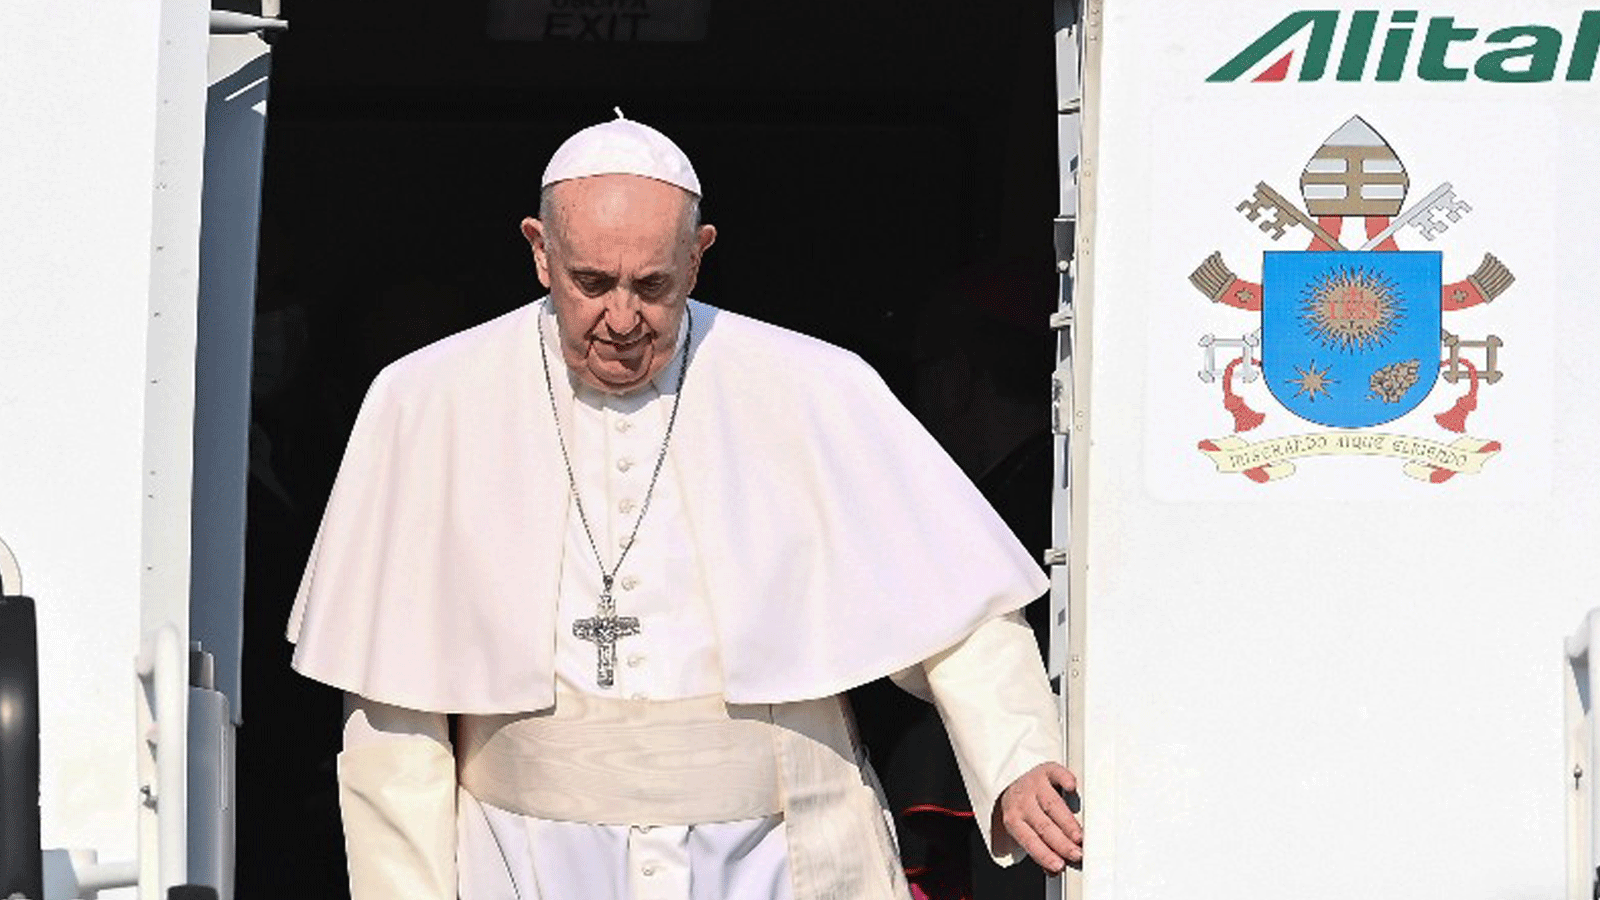 يستعد البابا فرانسيس للقاء أعضاء الجالية اليهودية المتبقية في سلوفاكيا، بعد يوم من تحذيره من 